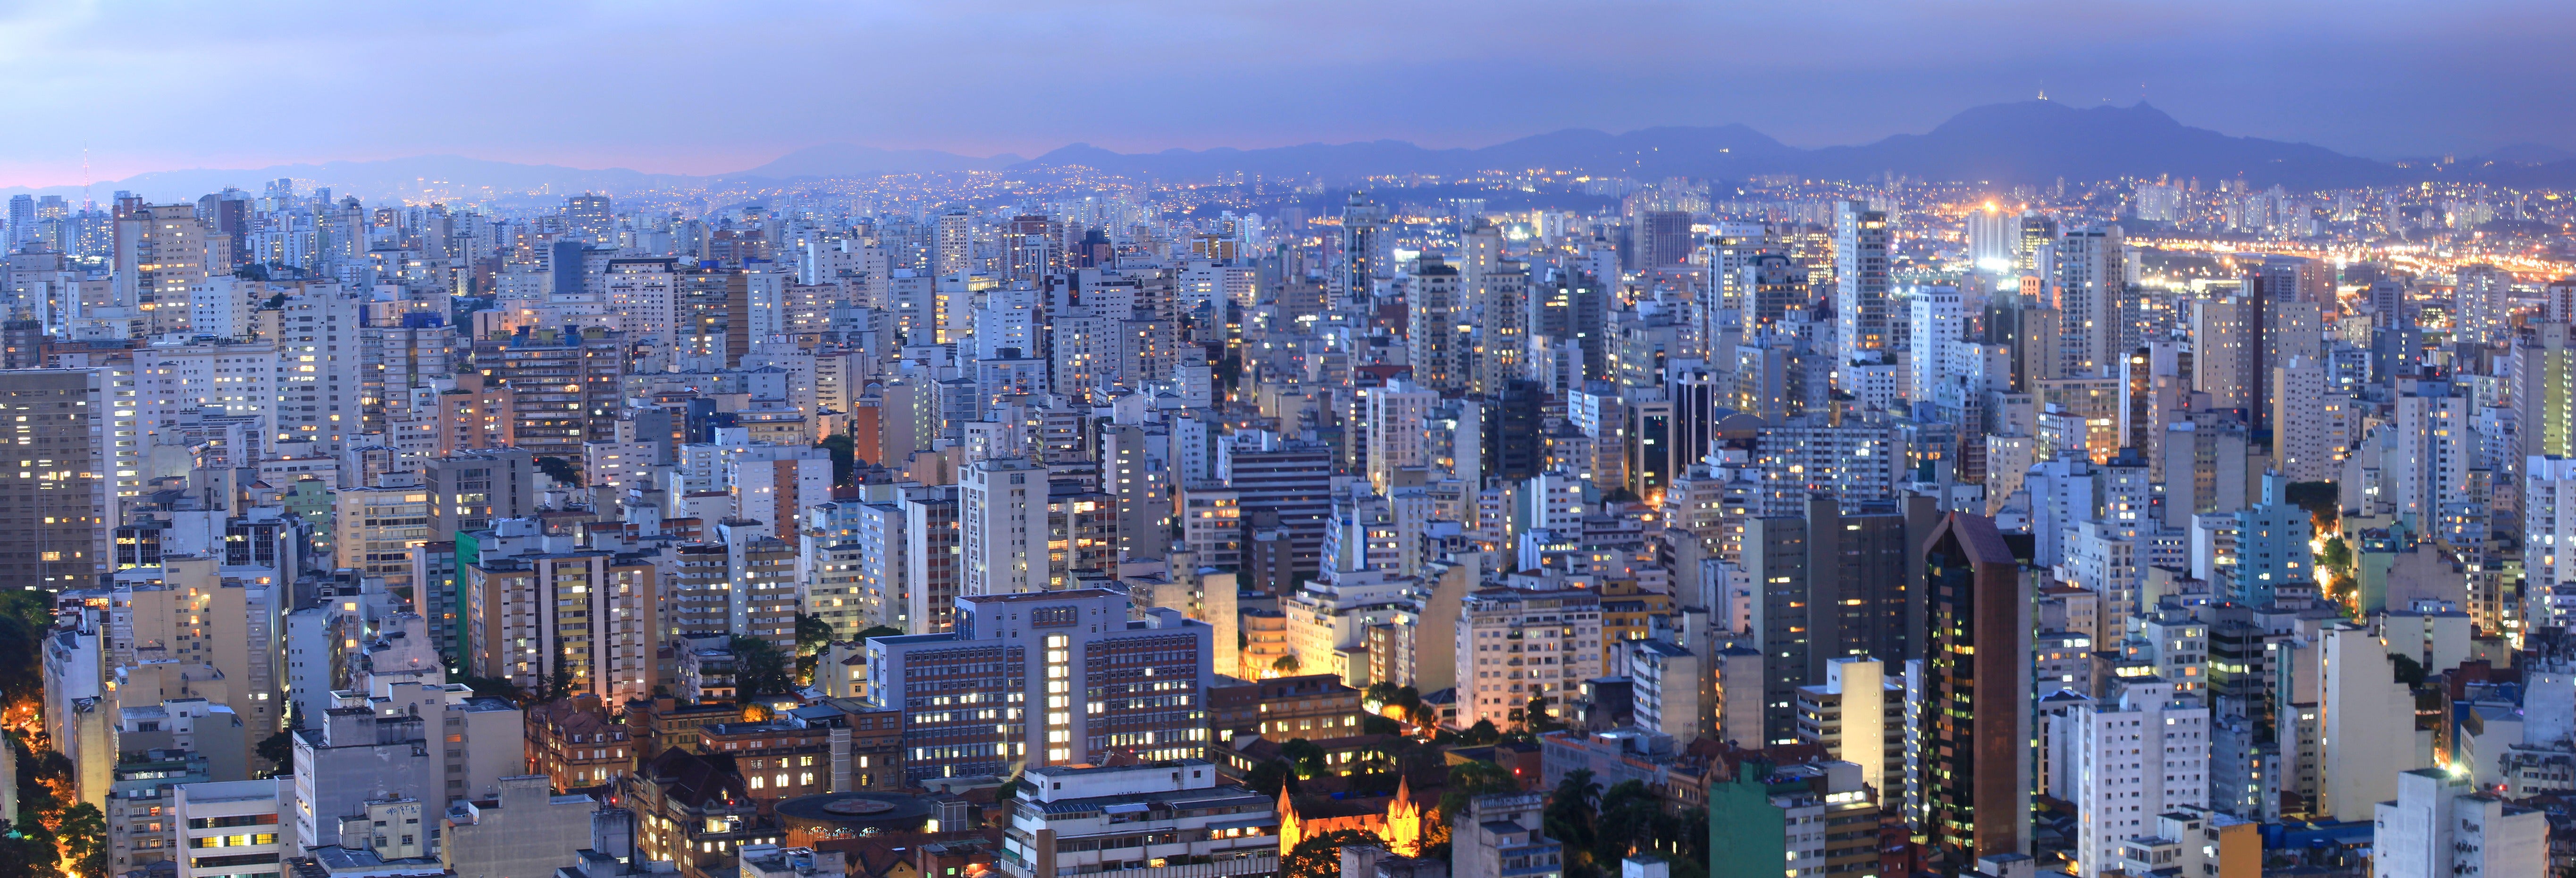 Estado de São Paulo